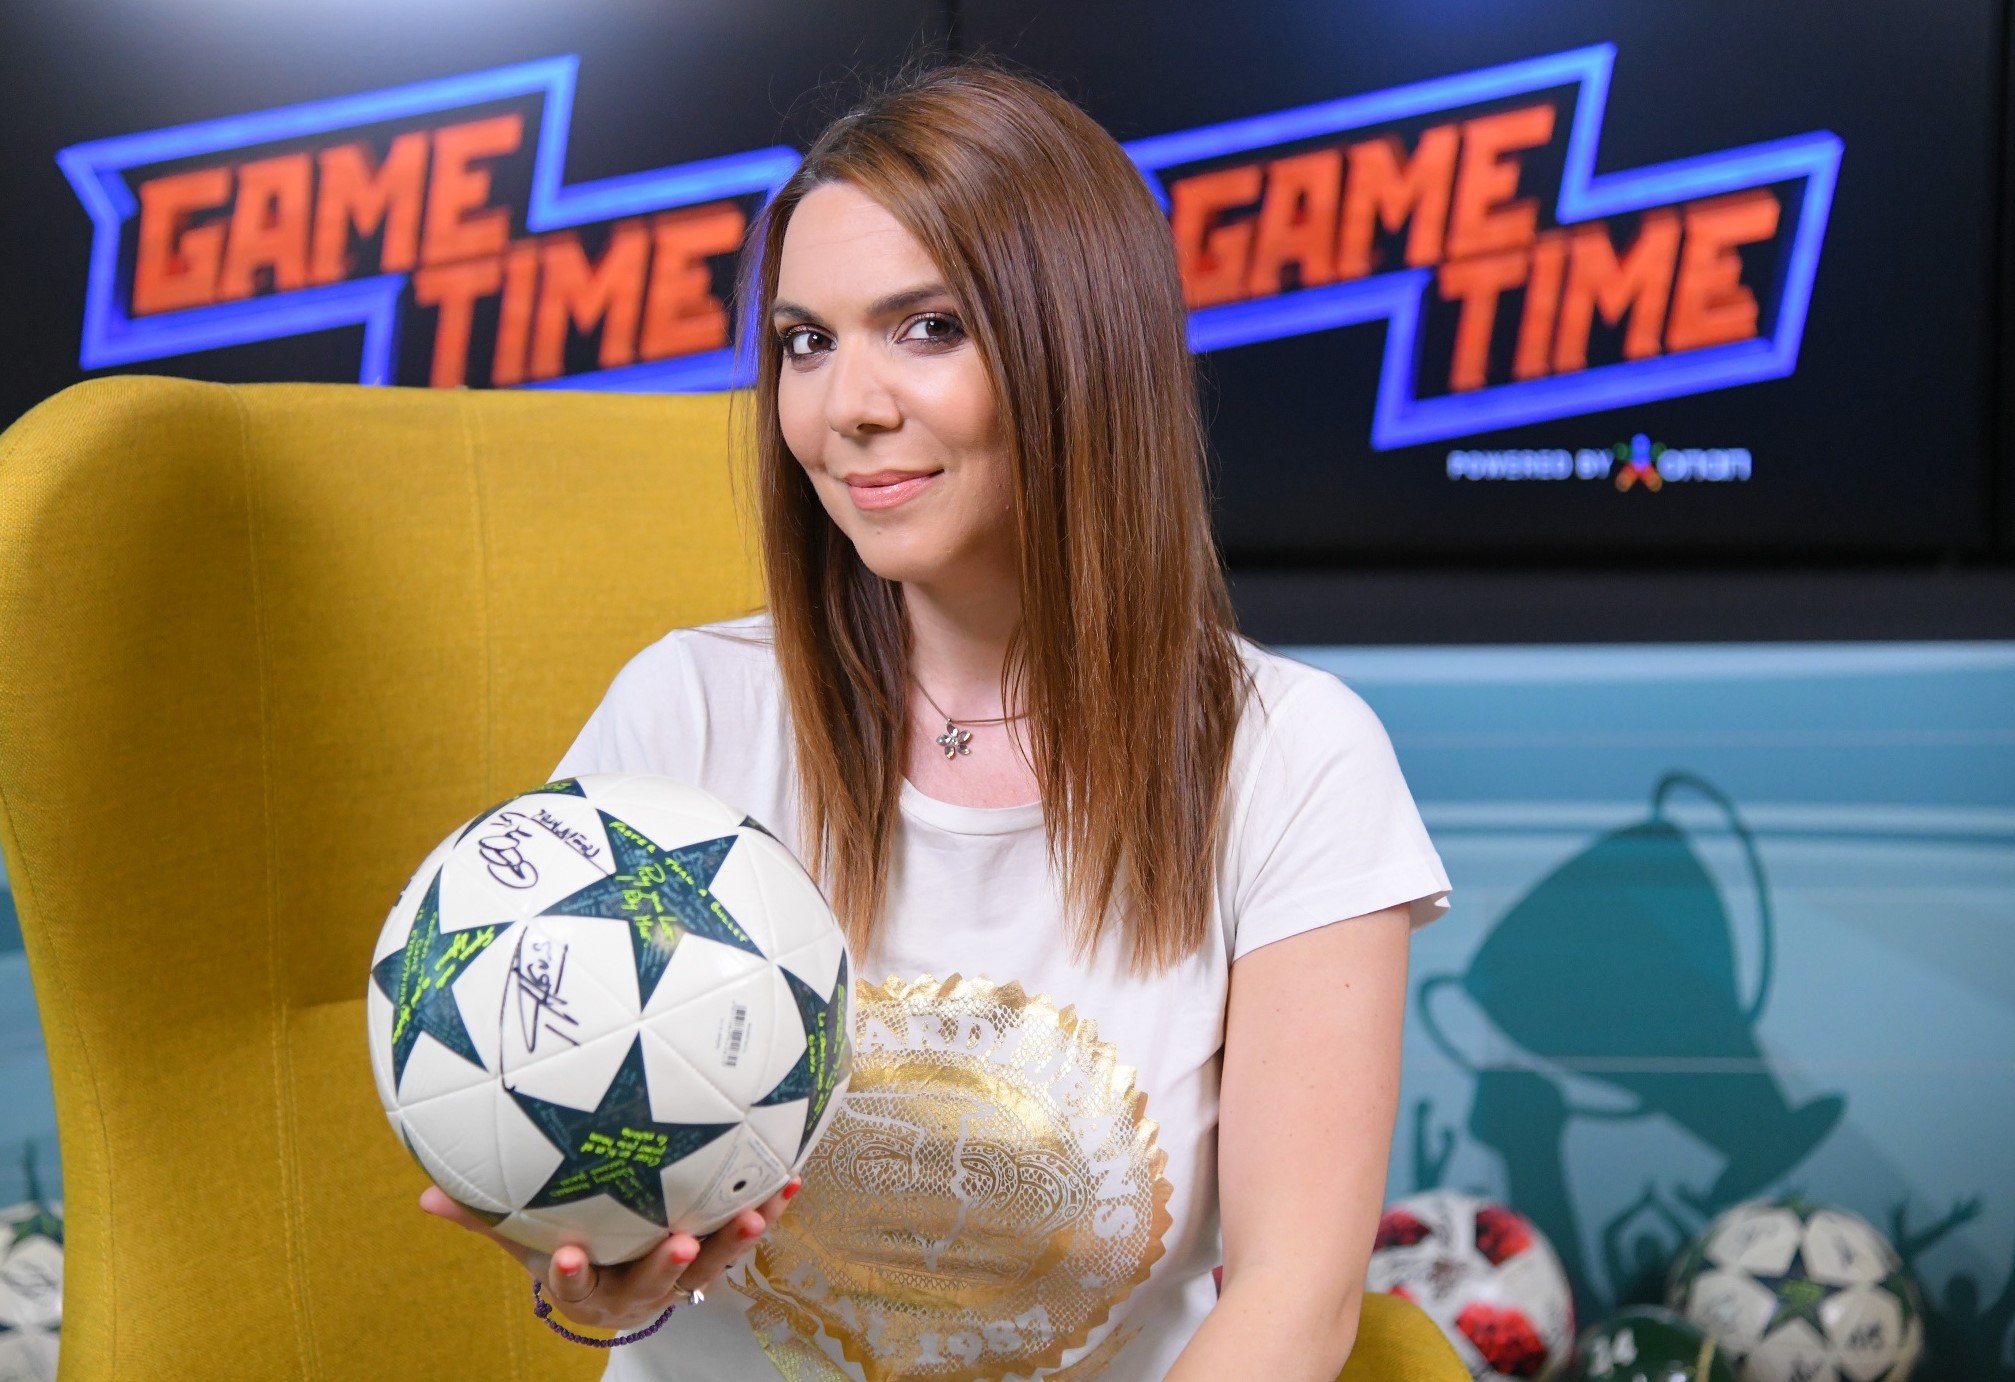 Η νέα σεζόν της Premier League στο ΟΠΑΠ Game Time με την Ελεάνα Παπαϊωάννου  - kontranews.gr - Τελευταίες εξελίξεις από την Ελλάδα και τον Κόσμο.